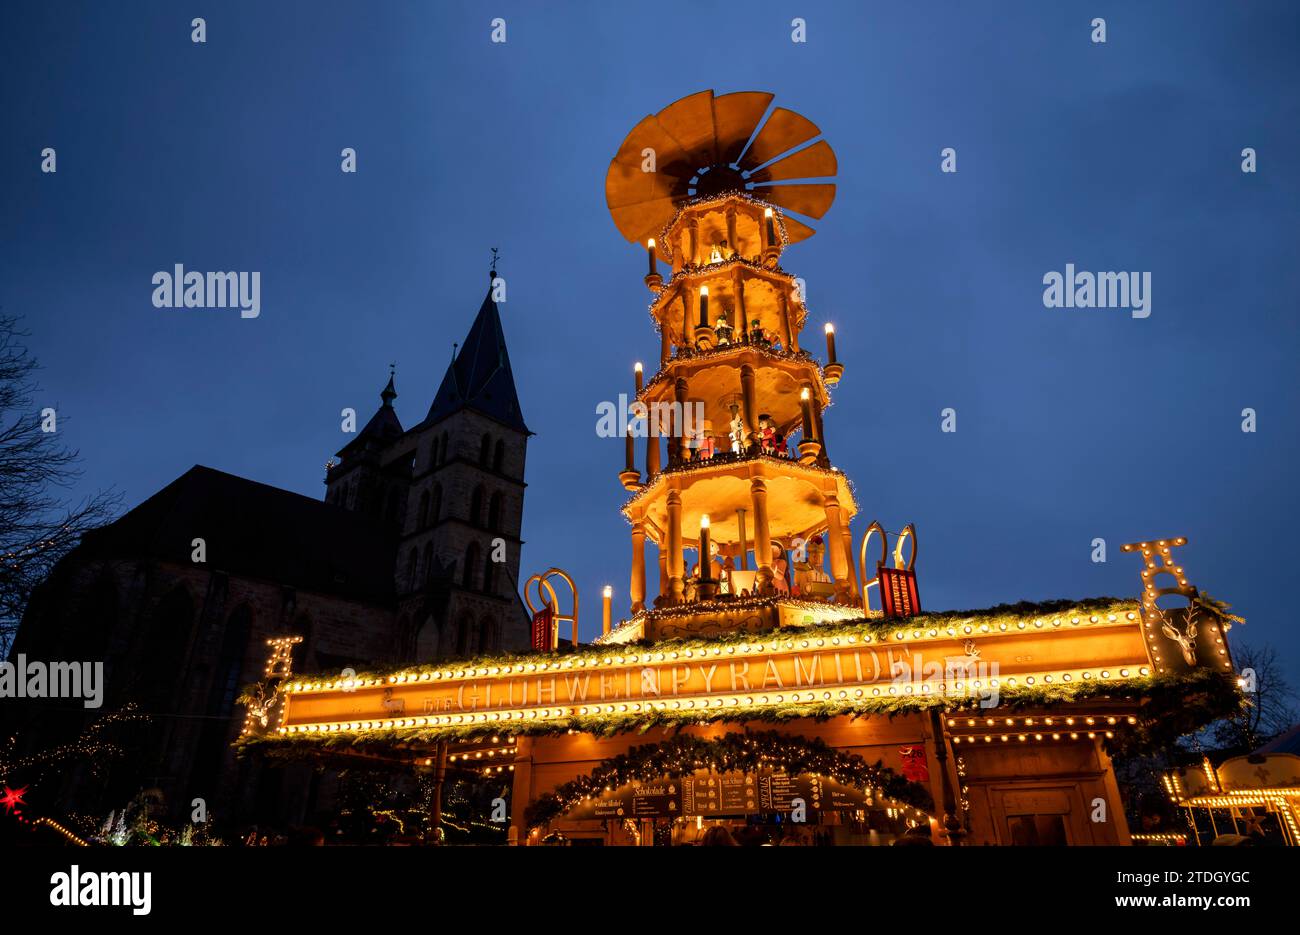 Marché de Noël, pyramide de Noël, église St Dionys, vieille ville, Esslingen am Neckar, heure bleue, Baden-Wuerttemberg, Allemagne Banque D'Images